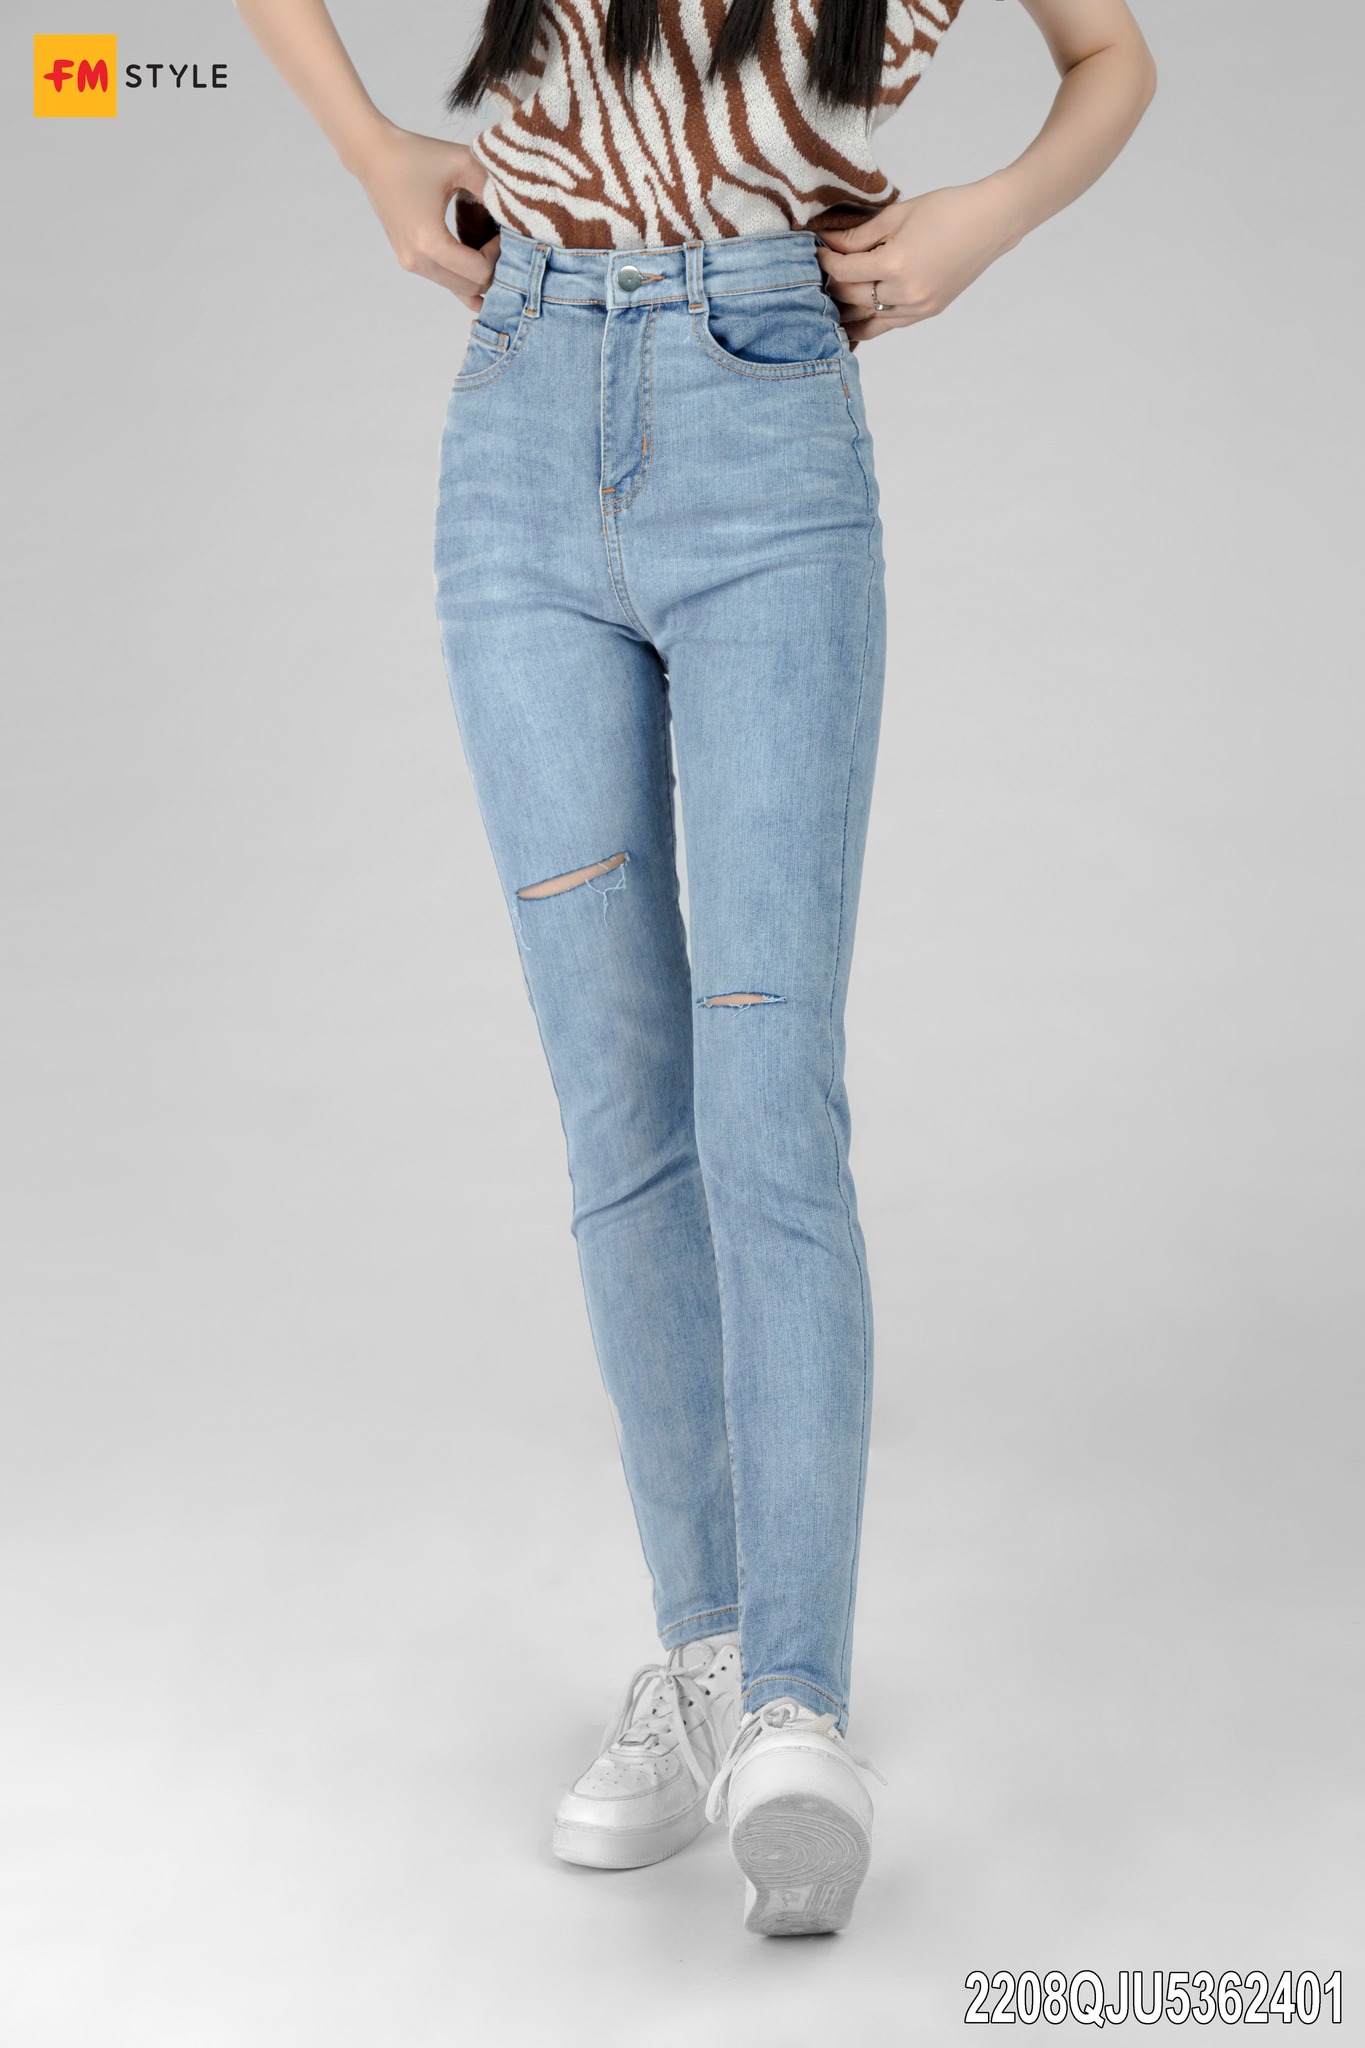 Quần jeans skinny mang đến sự thoải mái cho người mặc